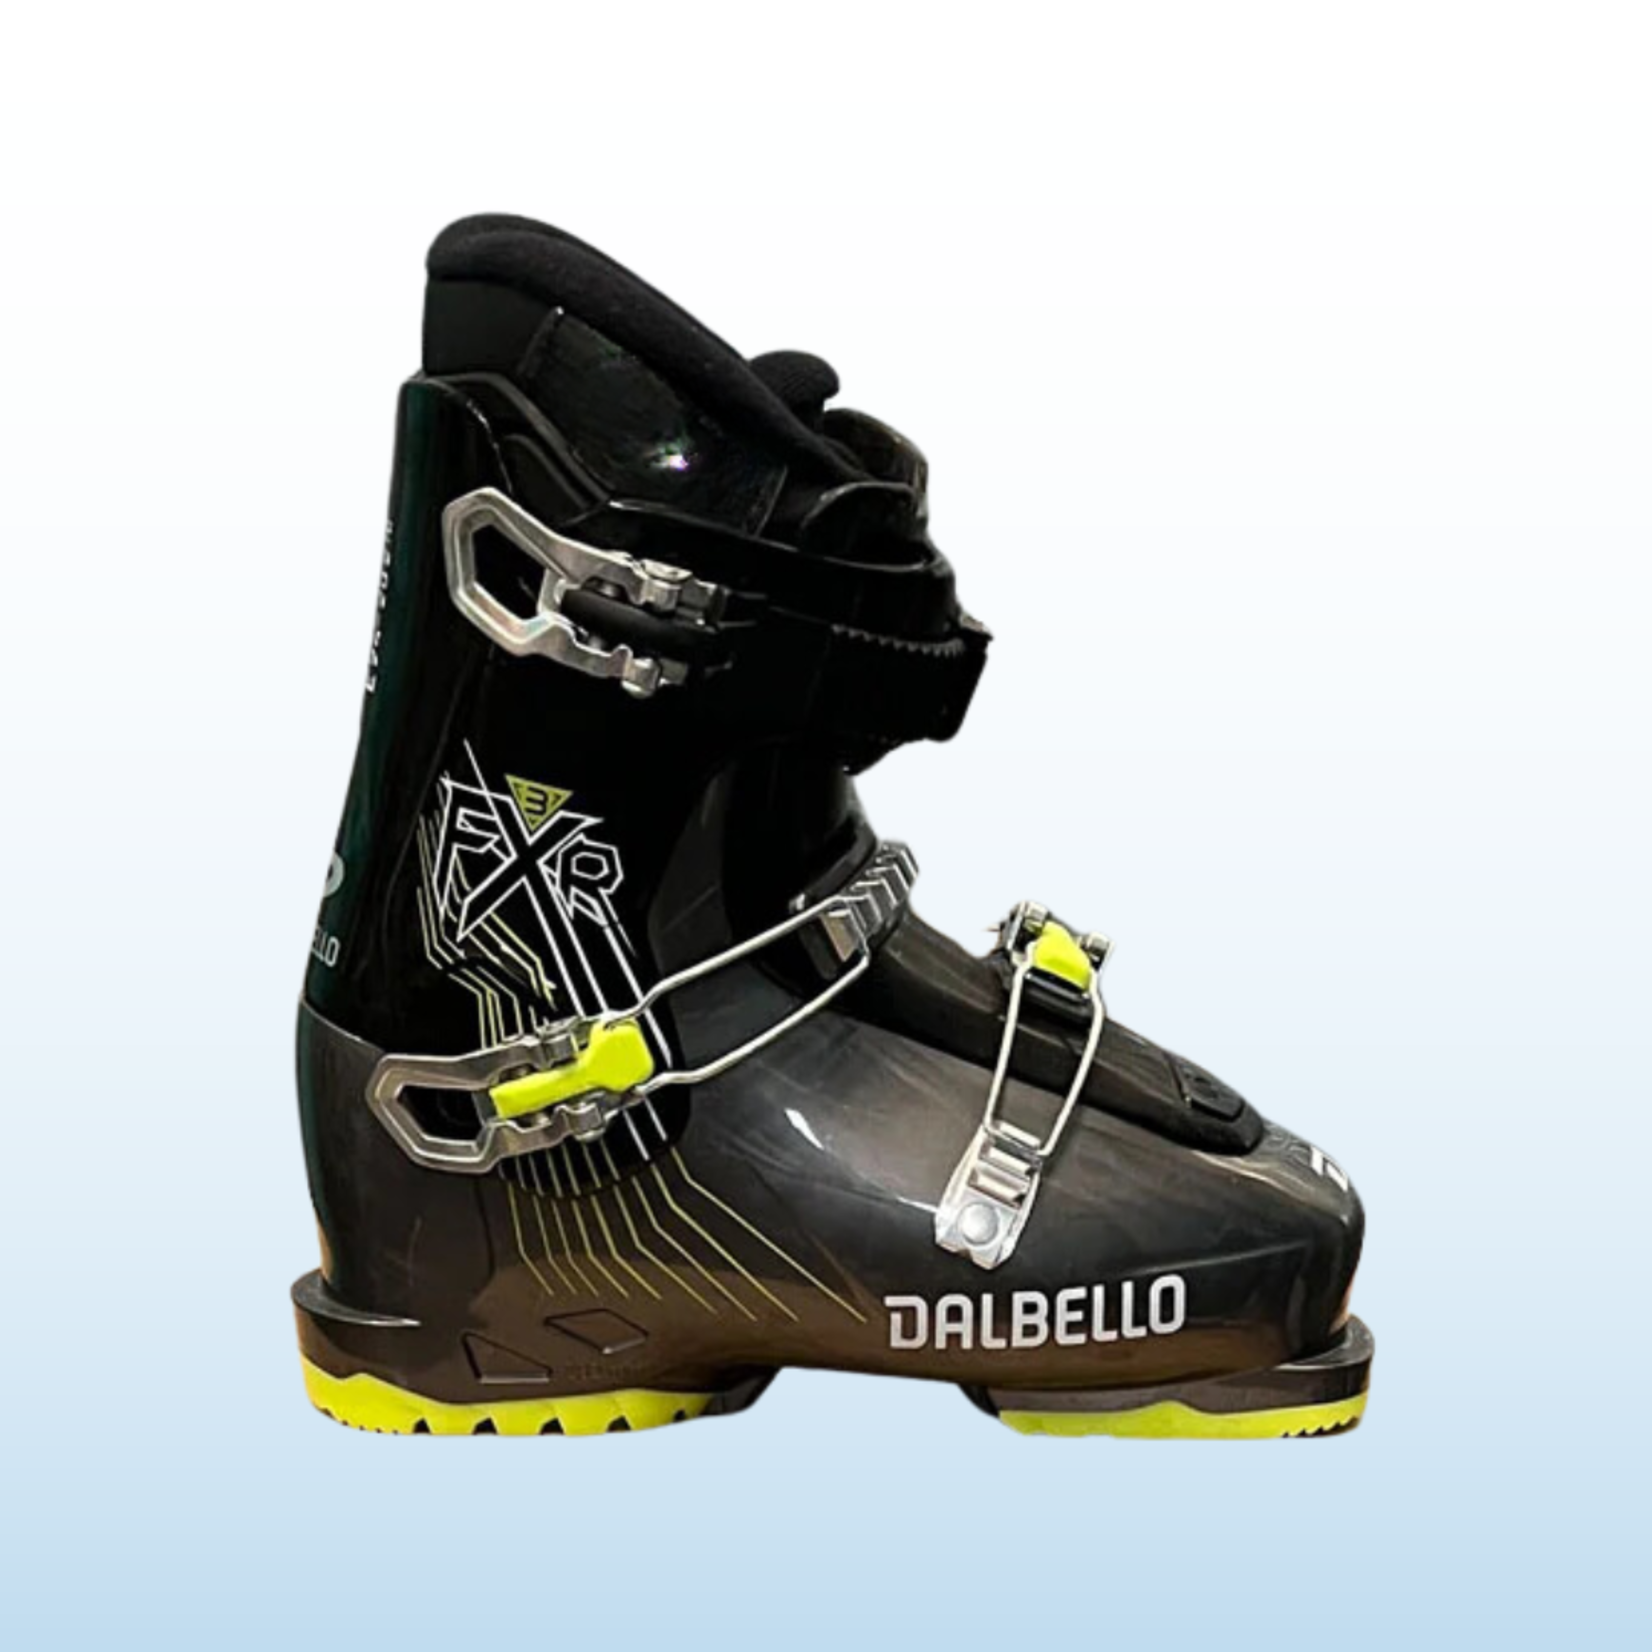 Dalbello Dalbello FXR Kids Ski Boots